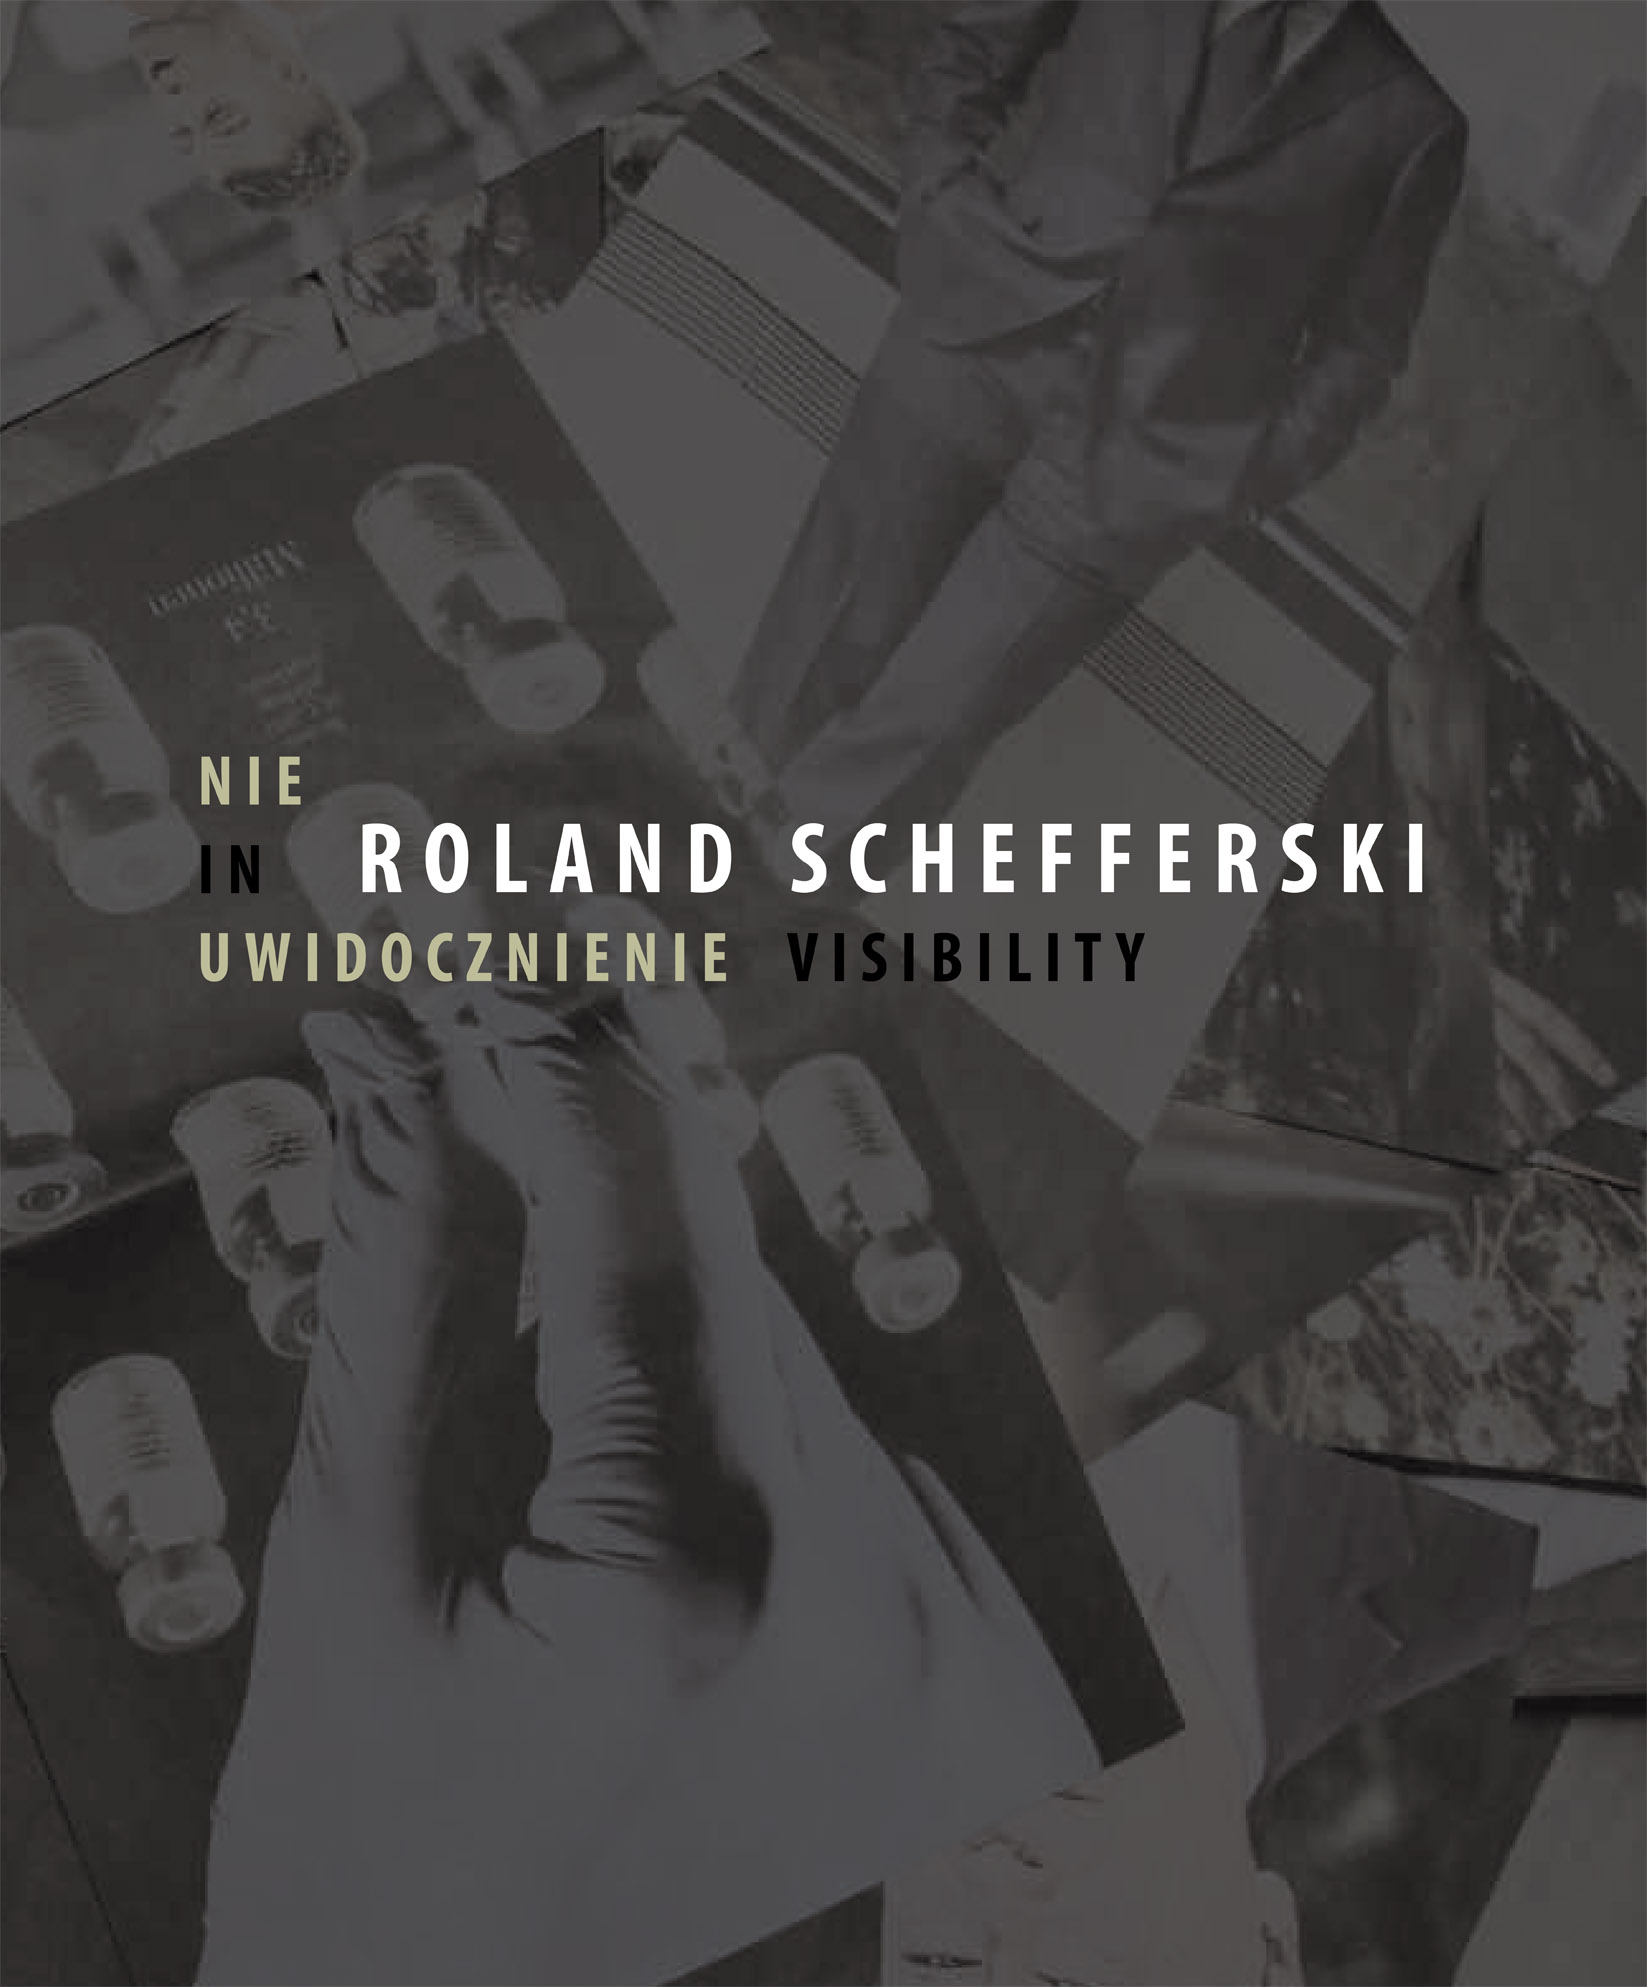 Roland Schefferski - NieUwidocznienie / UnSichtbarmachung